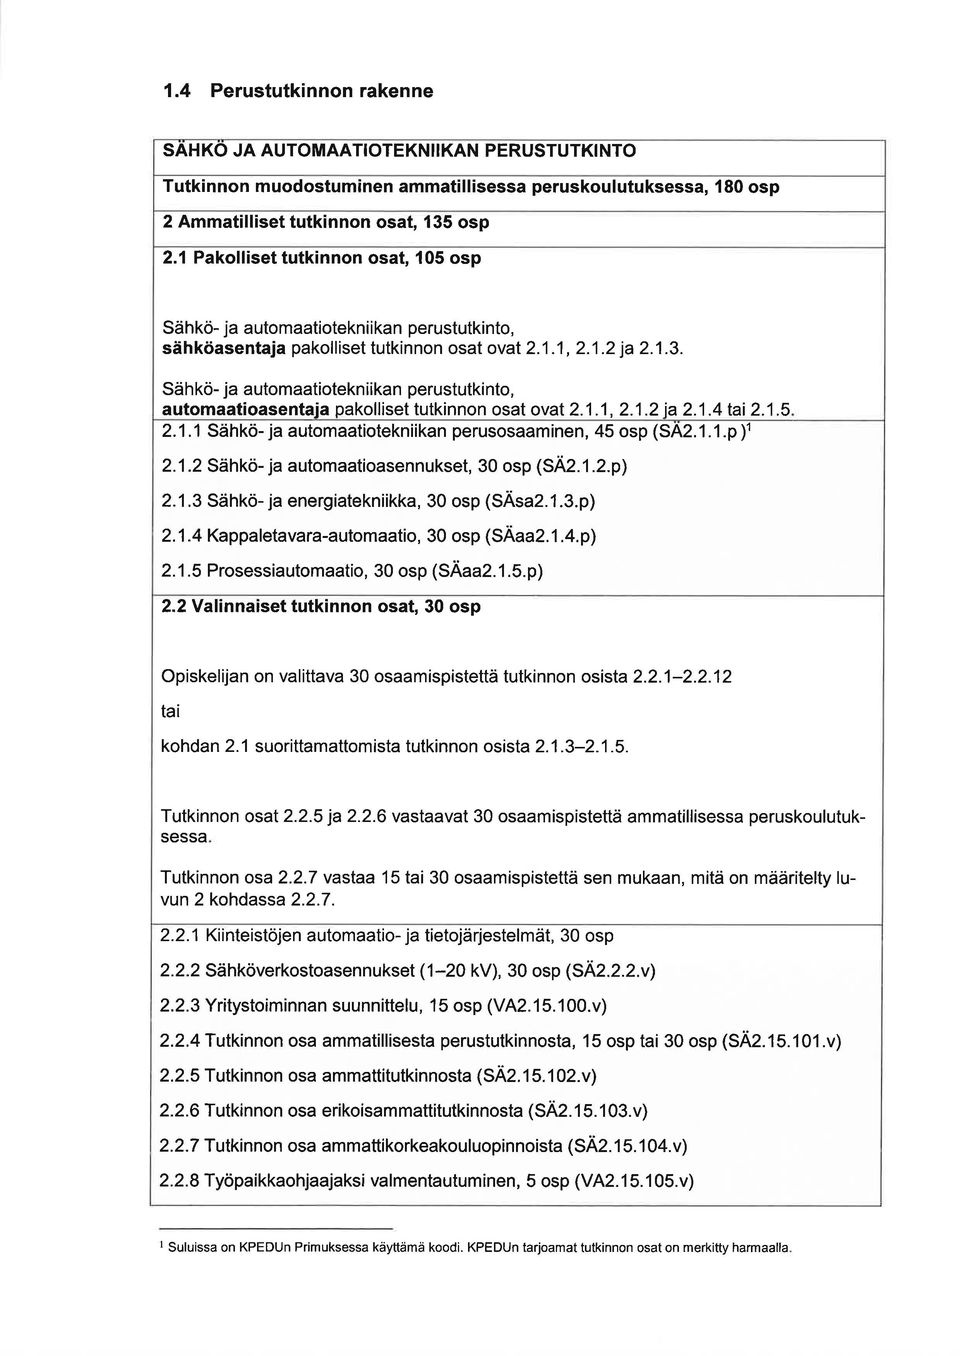 Sähkö- j utomtiotekniikn perustutkinto, utomtiosentj pkolliset tutkinnon ost ovt 2.1.1, 2.1.2 i 2.1.4 ti 2.1.5 2.1.1 Sähkö- j utomtiotekniikn perusosminen, 45 osp (S42.1.1.p )' 2.1.2 Sähkö- j utomtiosennukset, 30 osp (SÄ2.